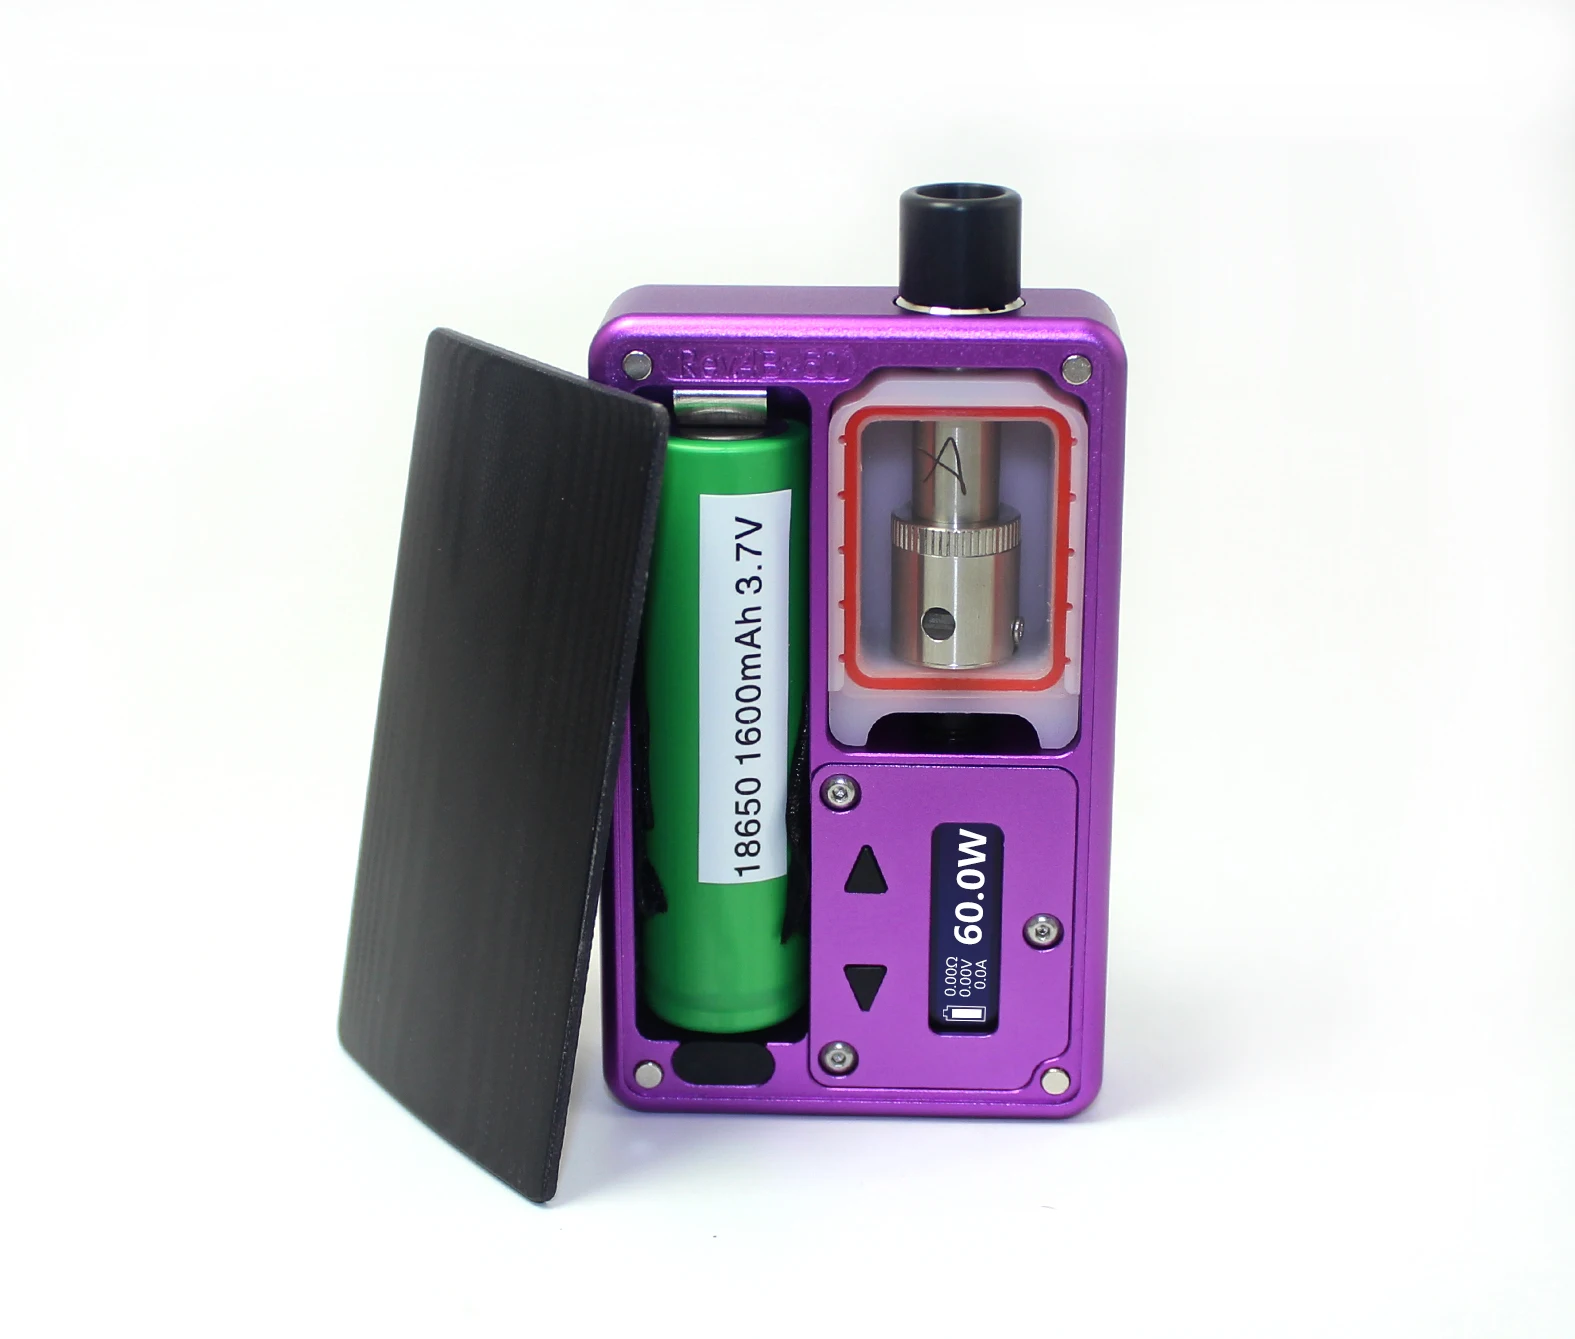 SXK заготовка коробка V4 60 Вт мод комплект с DNA 60 чип USB порт rev.4 устройство фиолетовый цвет с катушки Nautilus адаптер 6,5 мл емкость